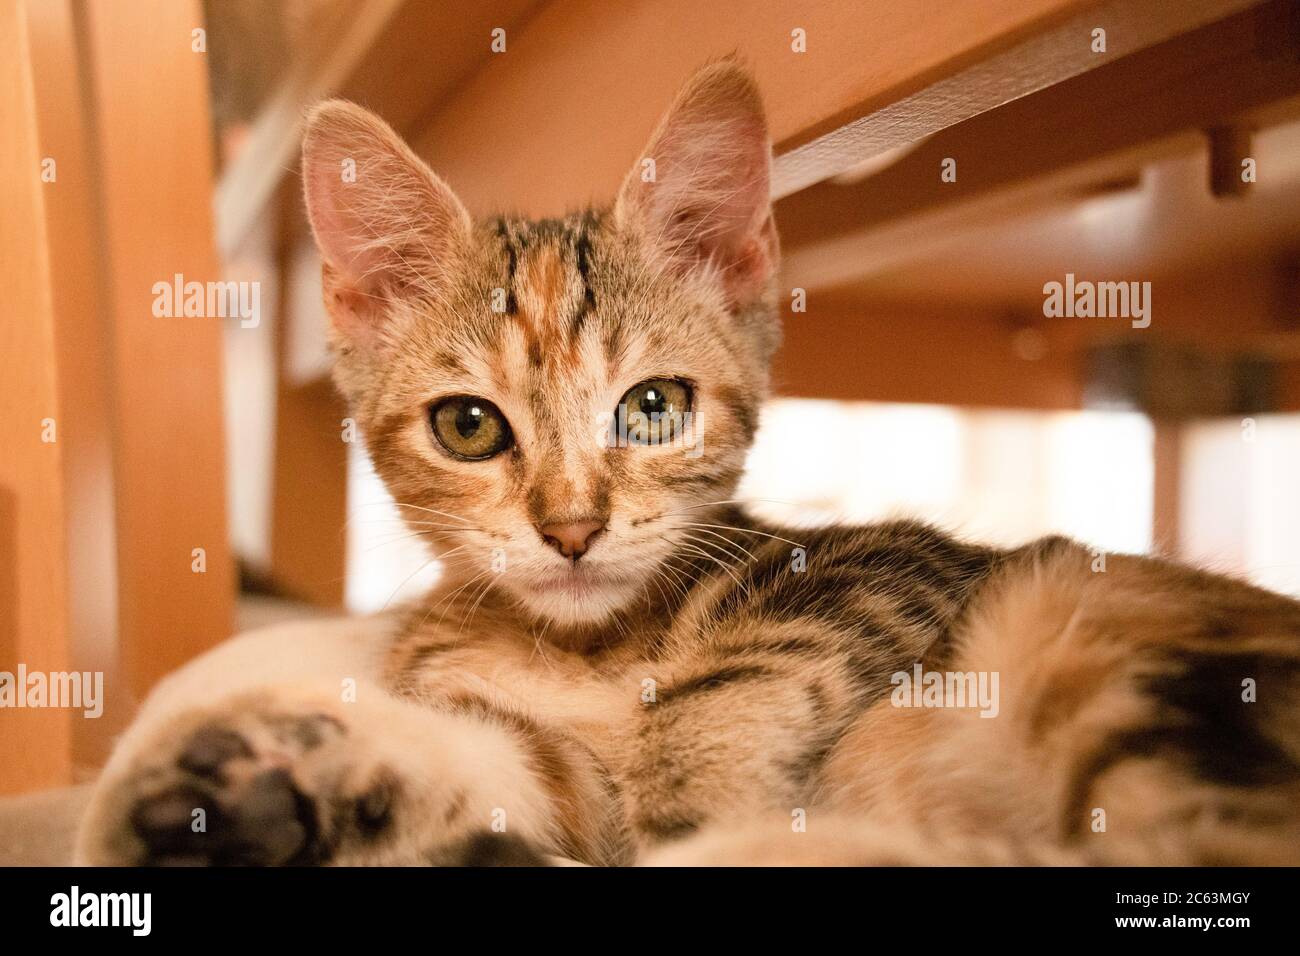 Schöne Katze Welpen auf einem Stuhl schauen aufmerksam Stockfoto